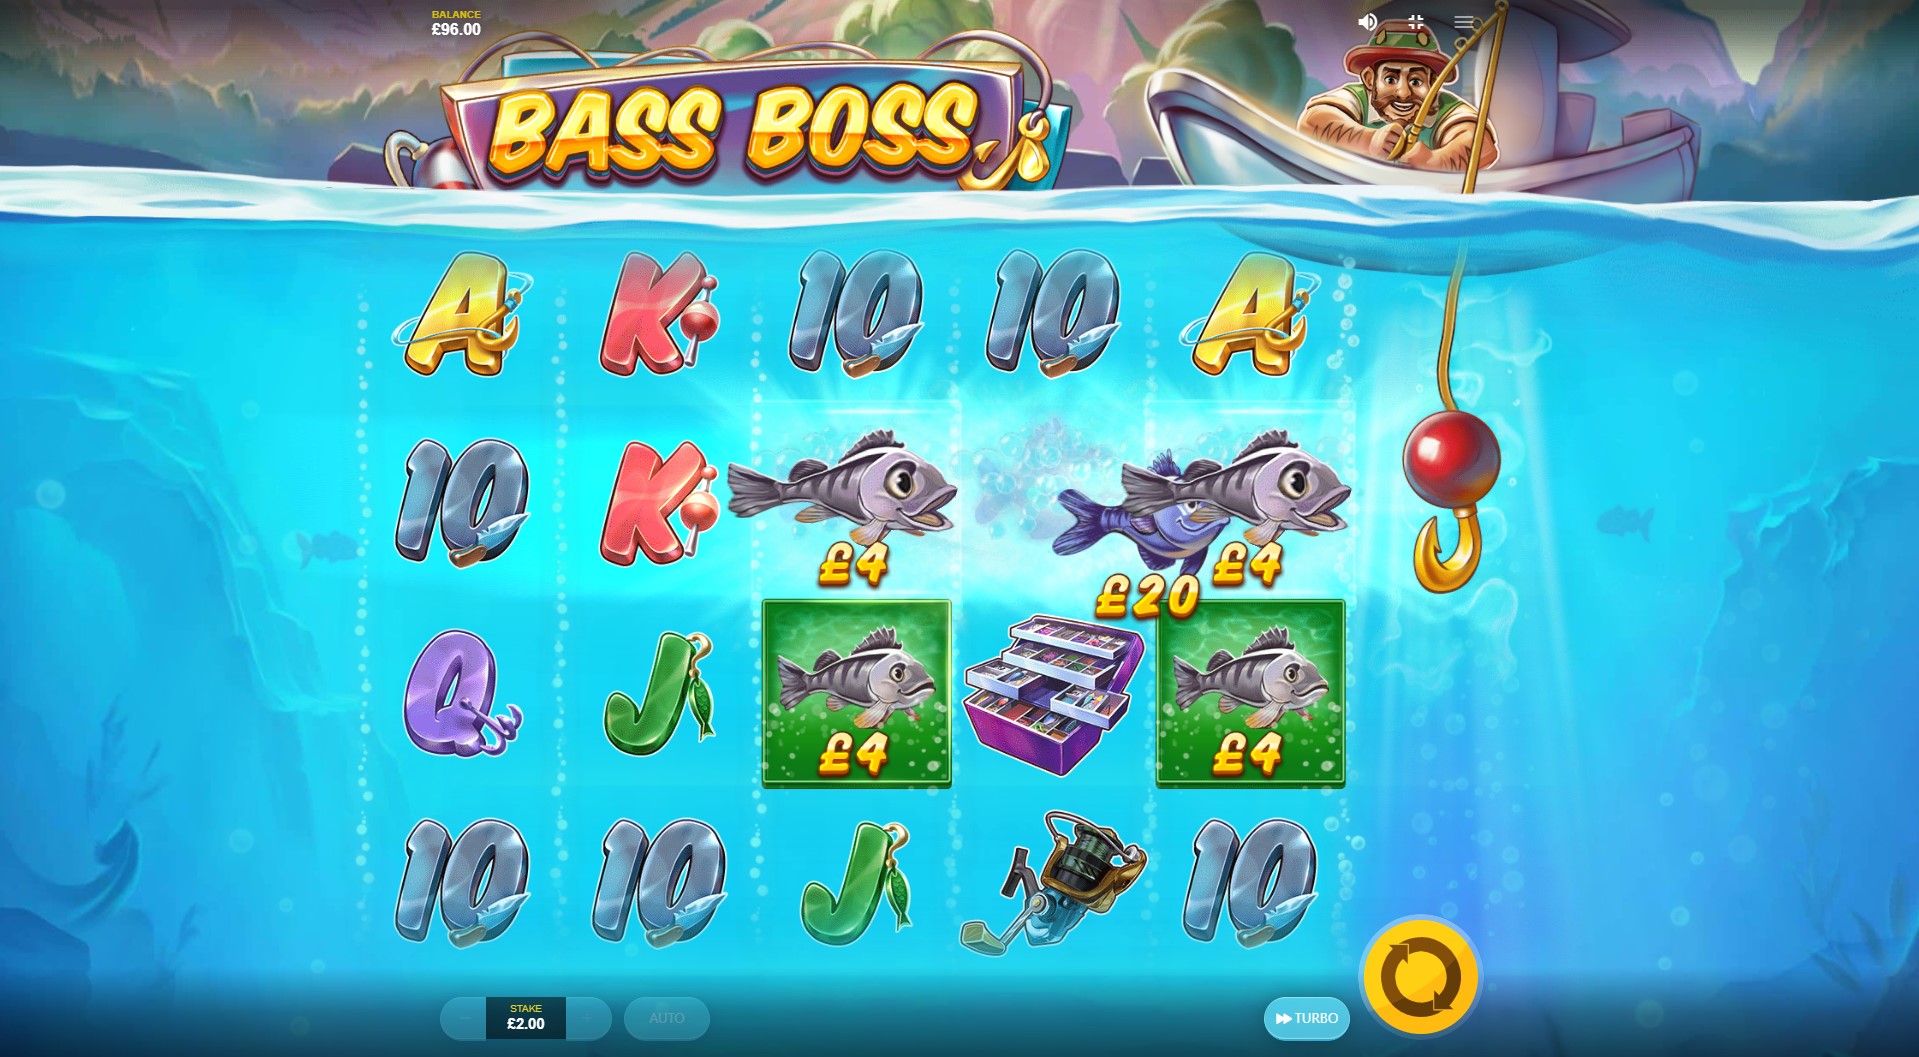 Best UK Online Casinos for Bass Boss